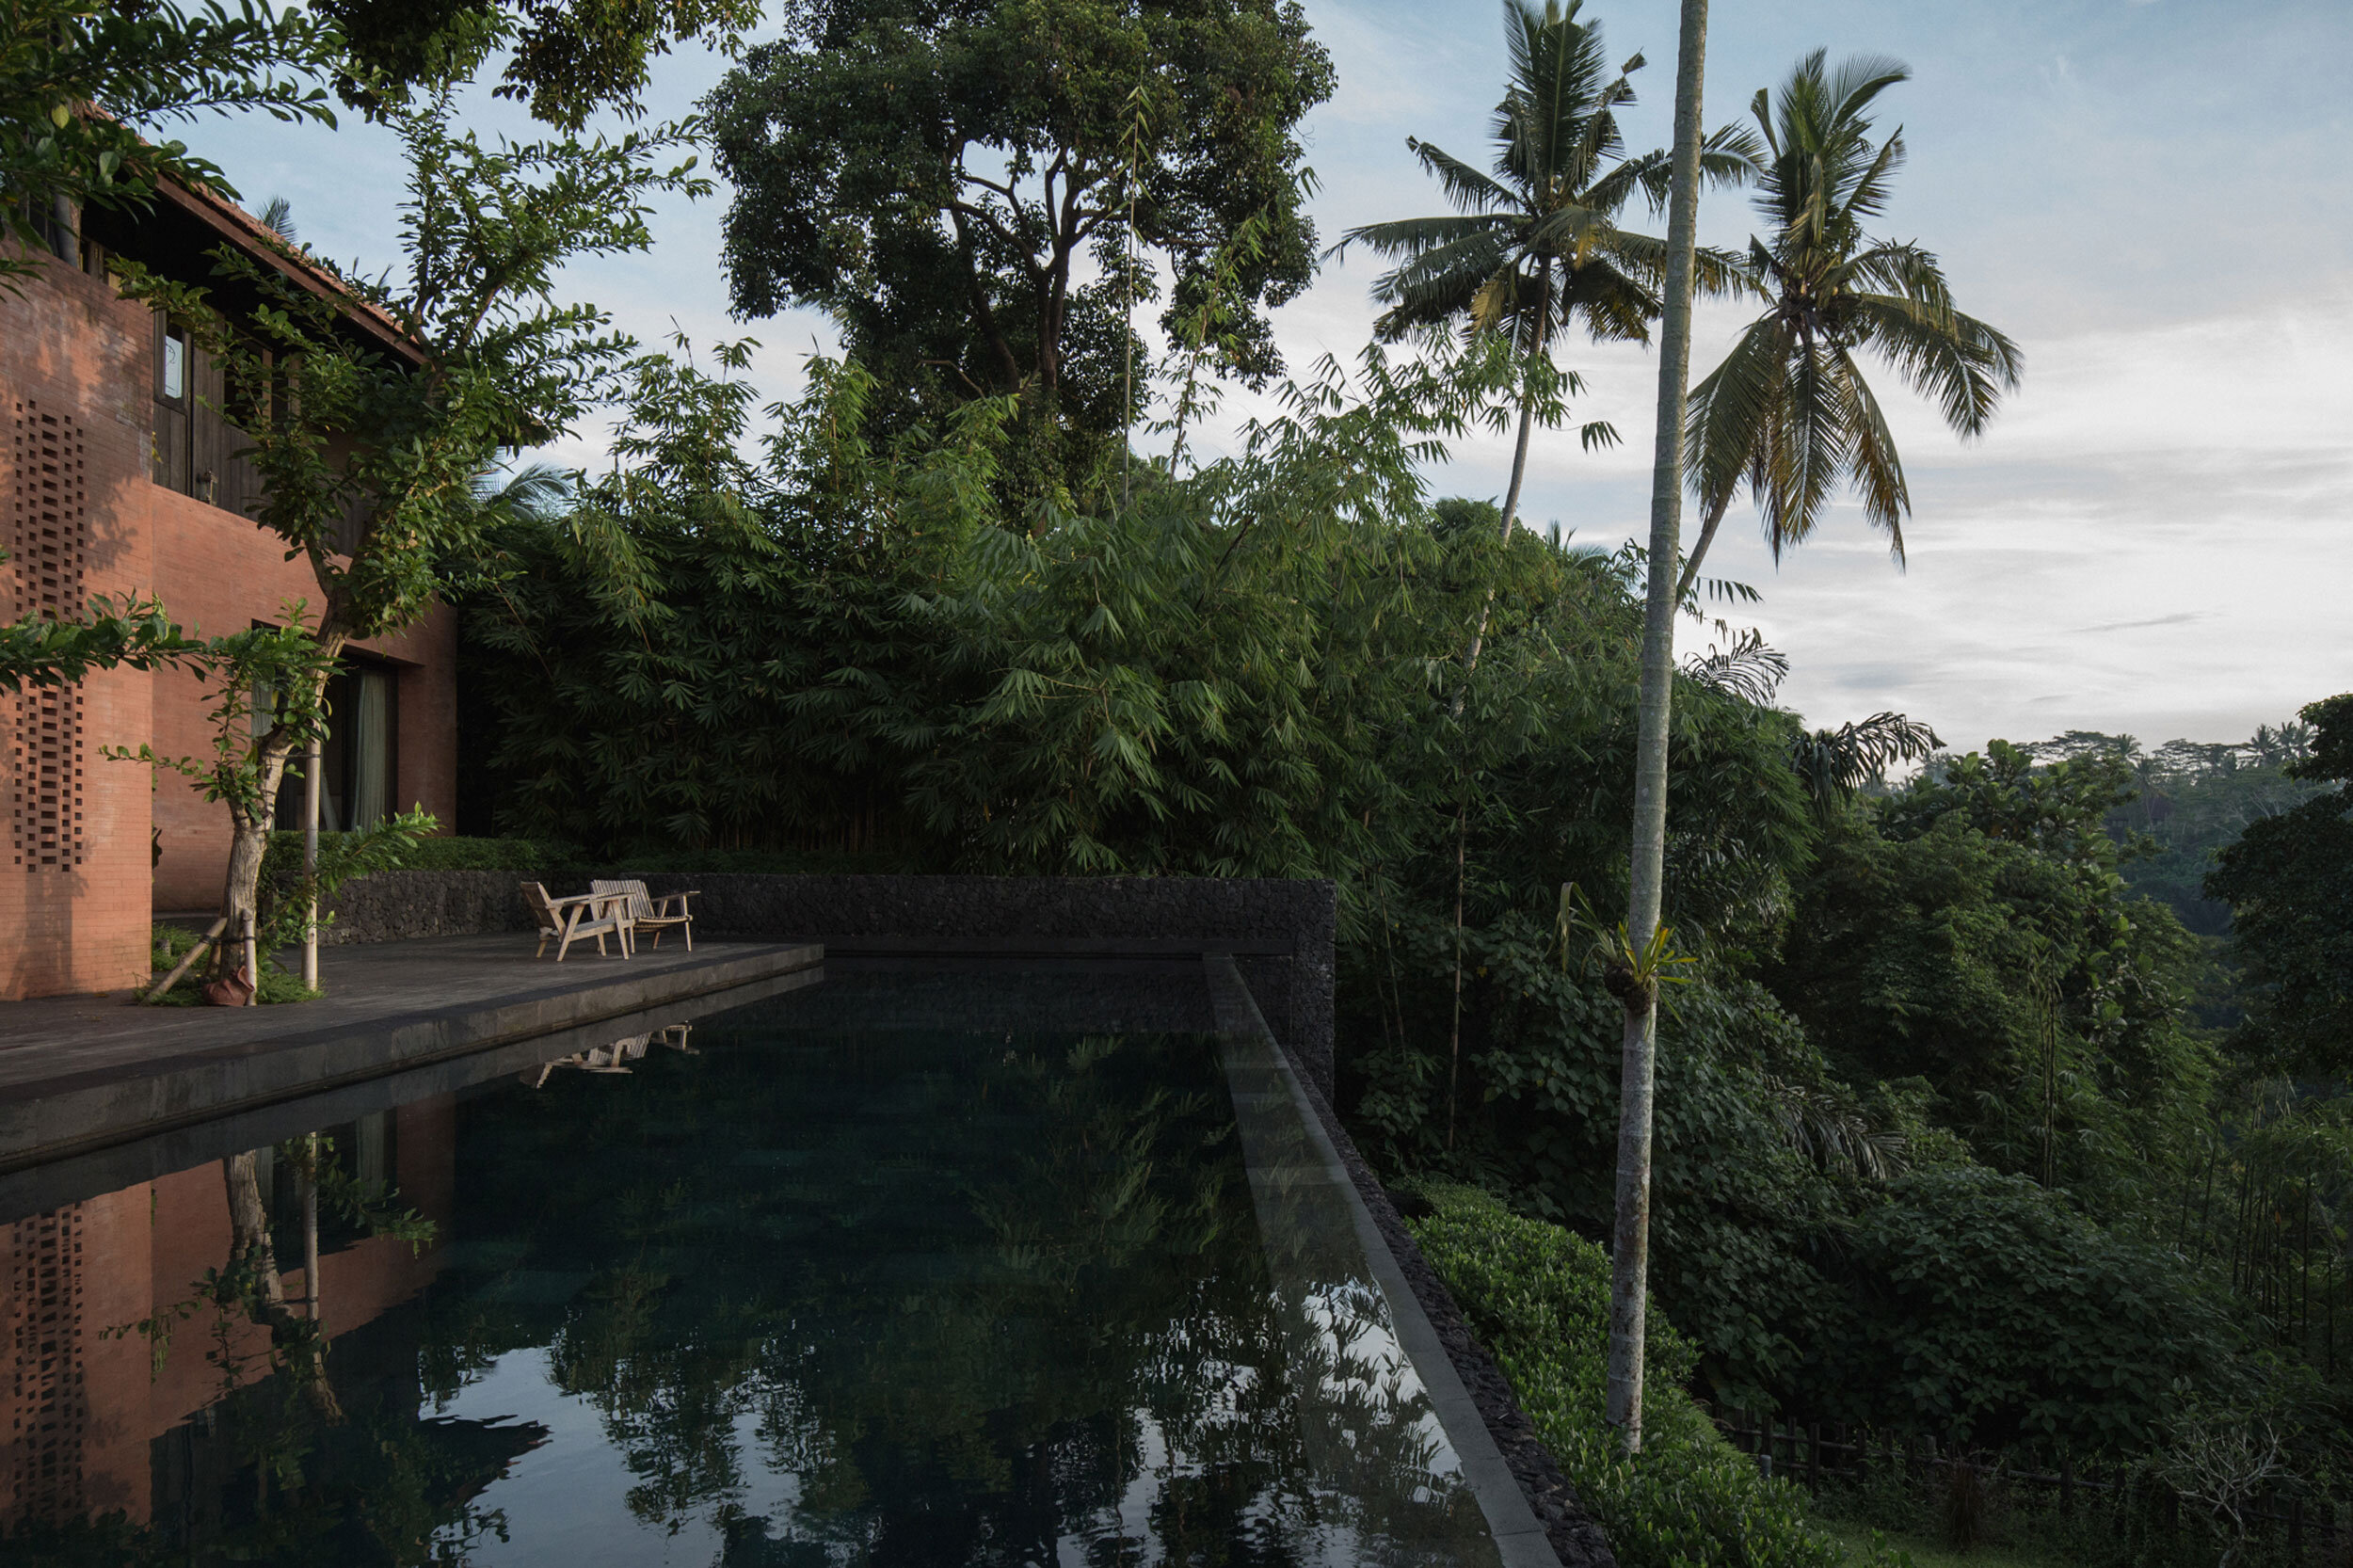  Rumah Fajar Villa Bali 